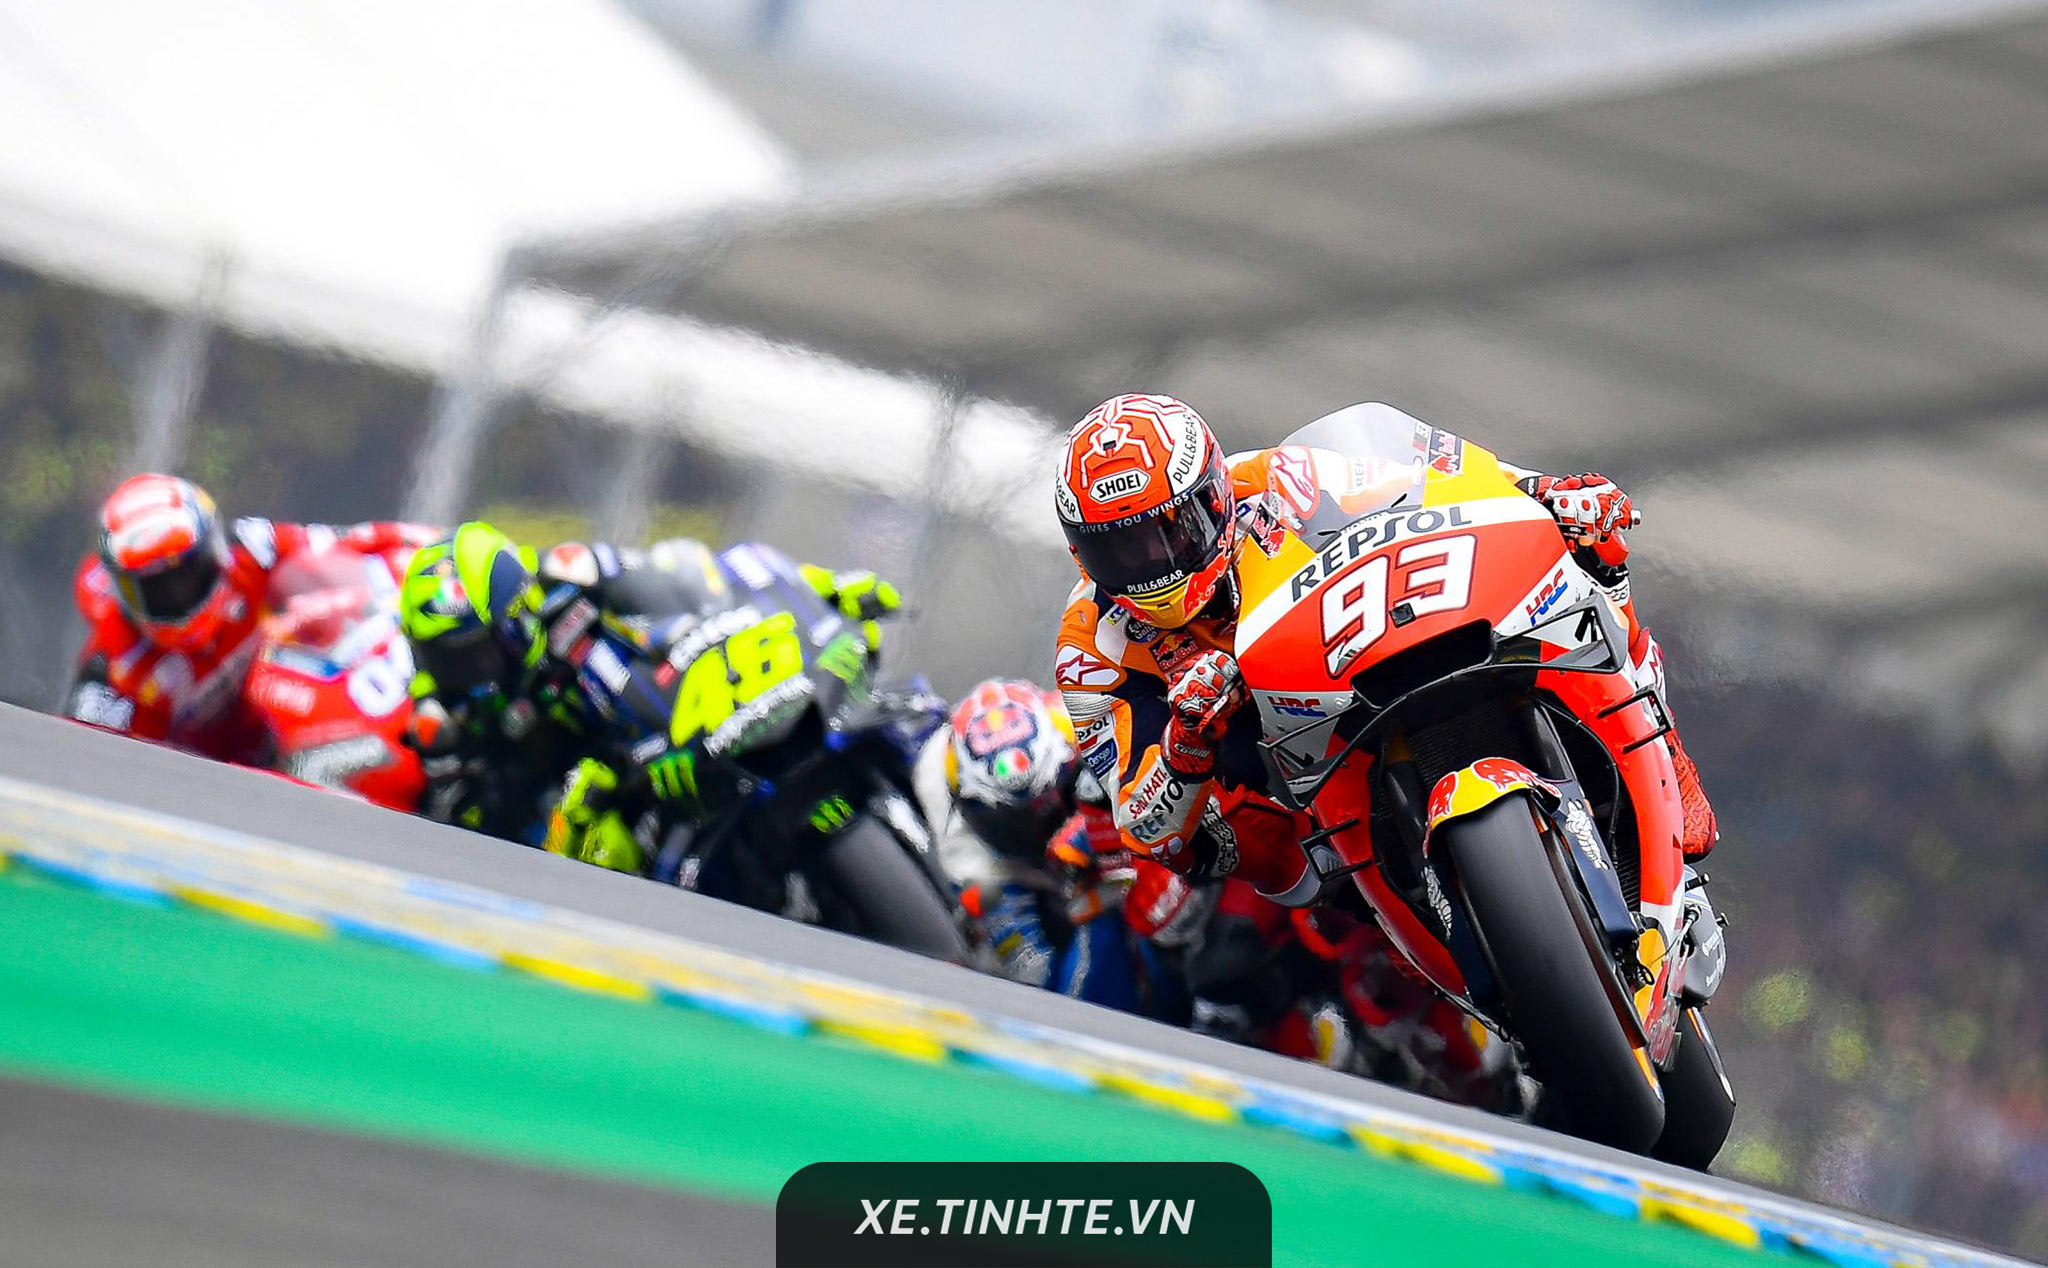 #MotoGP19: Đánh bại bộ đôi Ducati, Marquez về nhất tại Le Mans để tiếp tục đứng nhất BXH